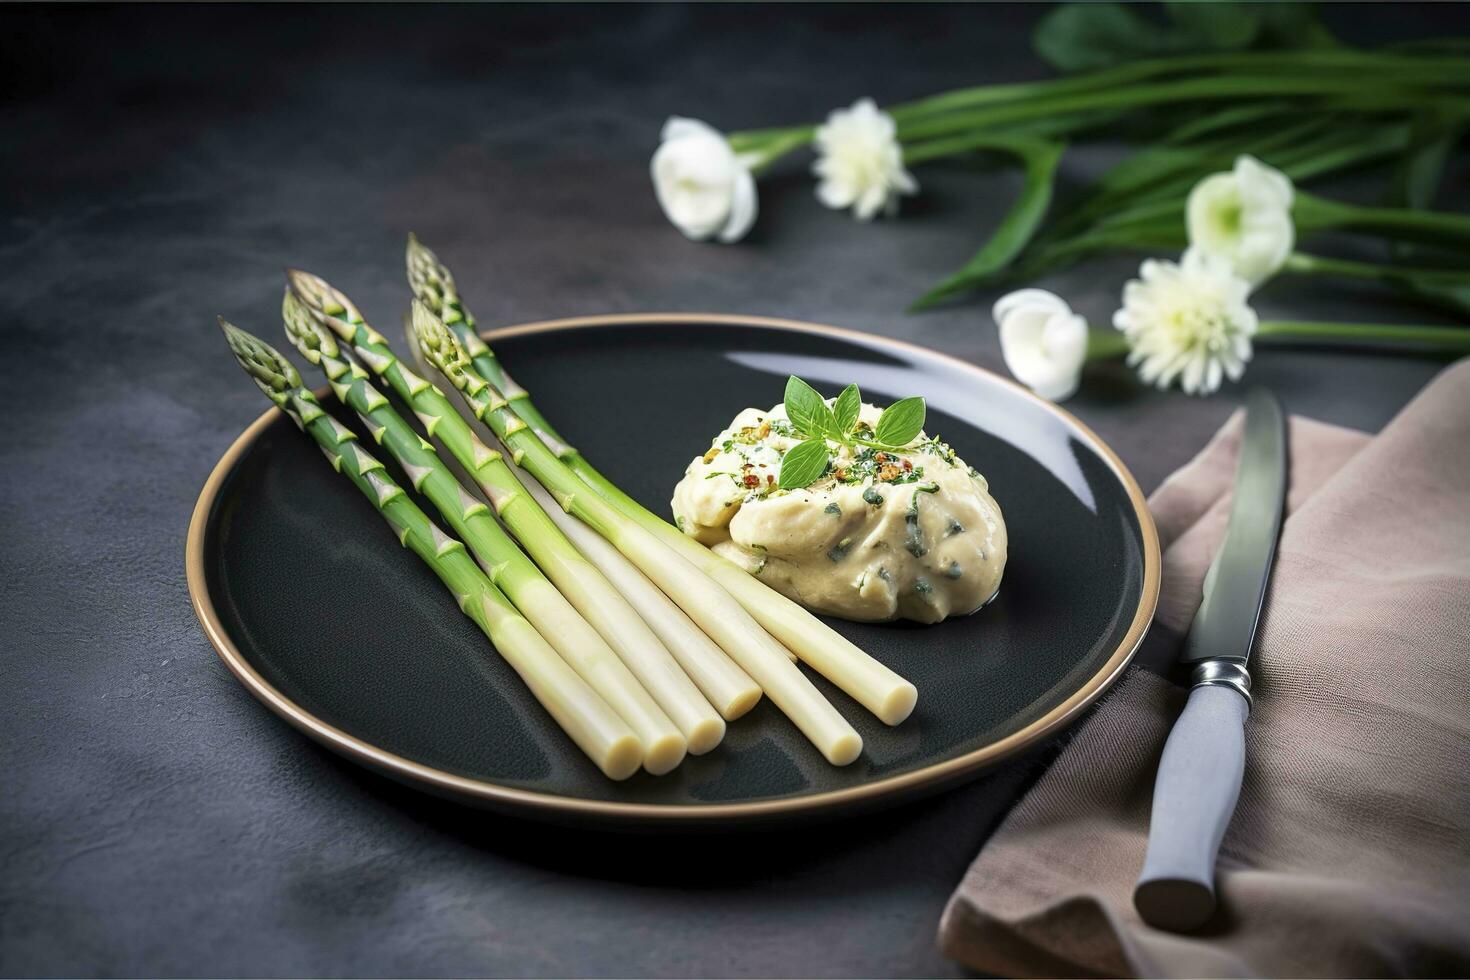 traditionnel bavarois blanc asperges servi avec sauvage Ail et amande beurre fermer sur une nordique conception assiette avec copie espace, produire ai photo